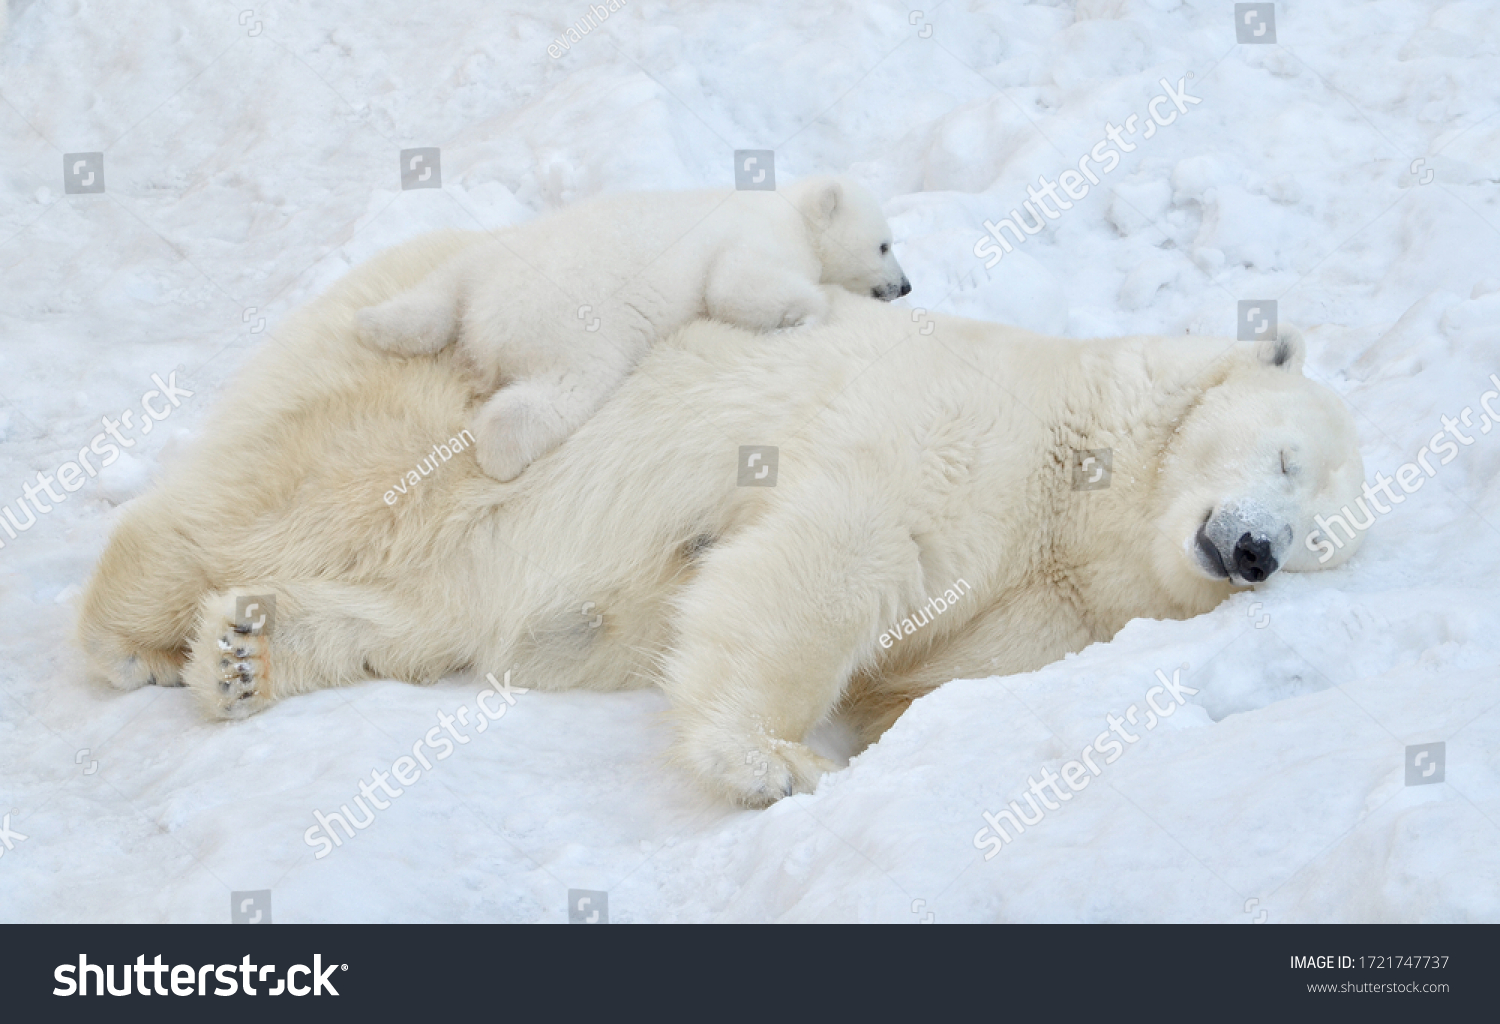 A polar bear sleeps in the snow with a small bear cub. #1721747737